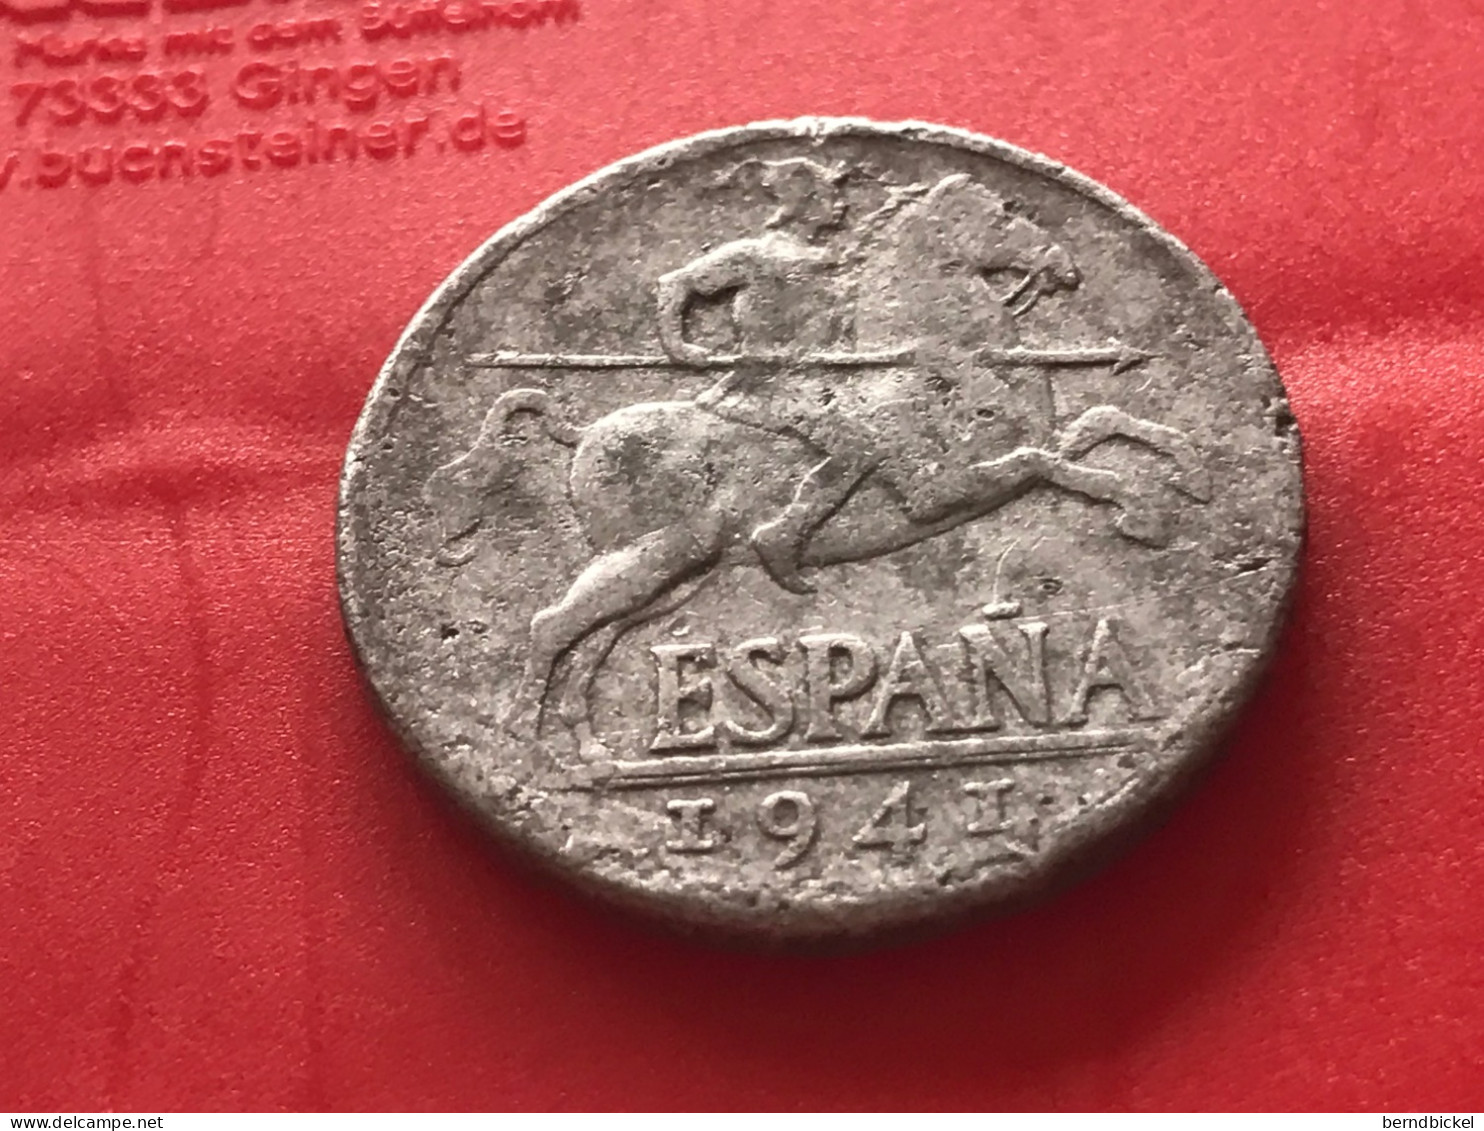 Münze Münzen Umlaufmünze Spanien 5 Centimos 1941 - 5 Centiemen